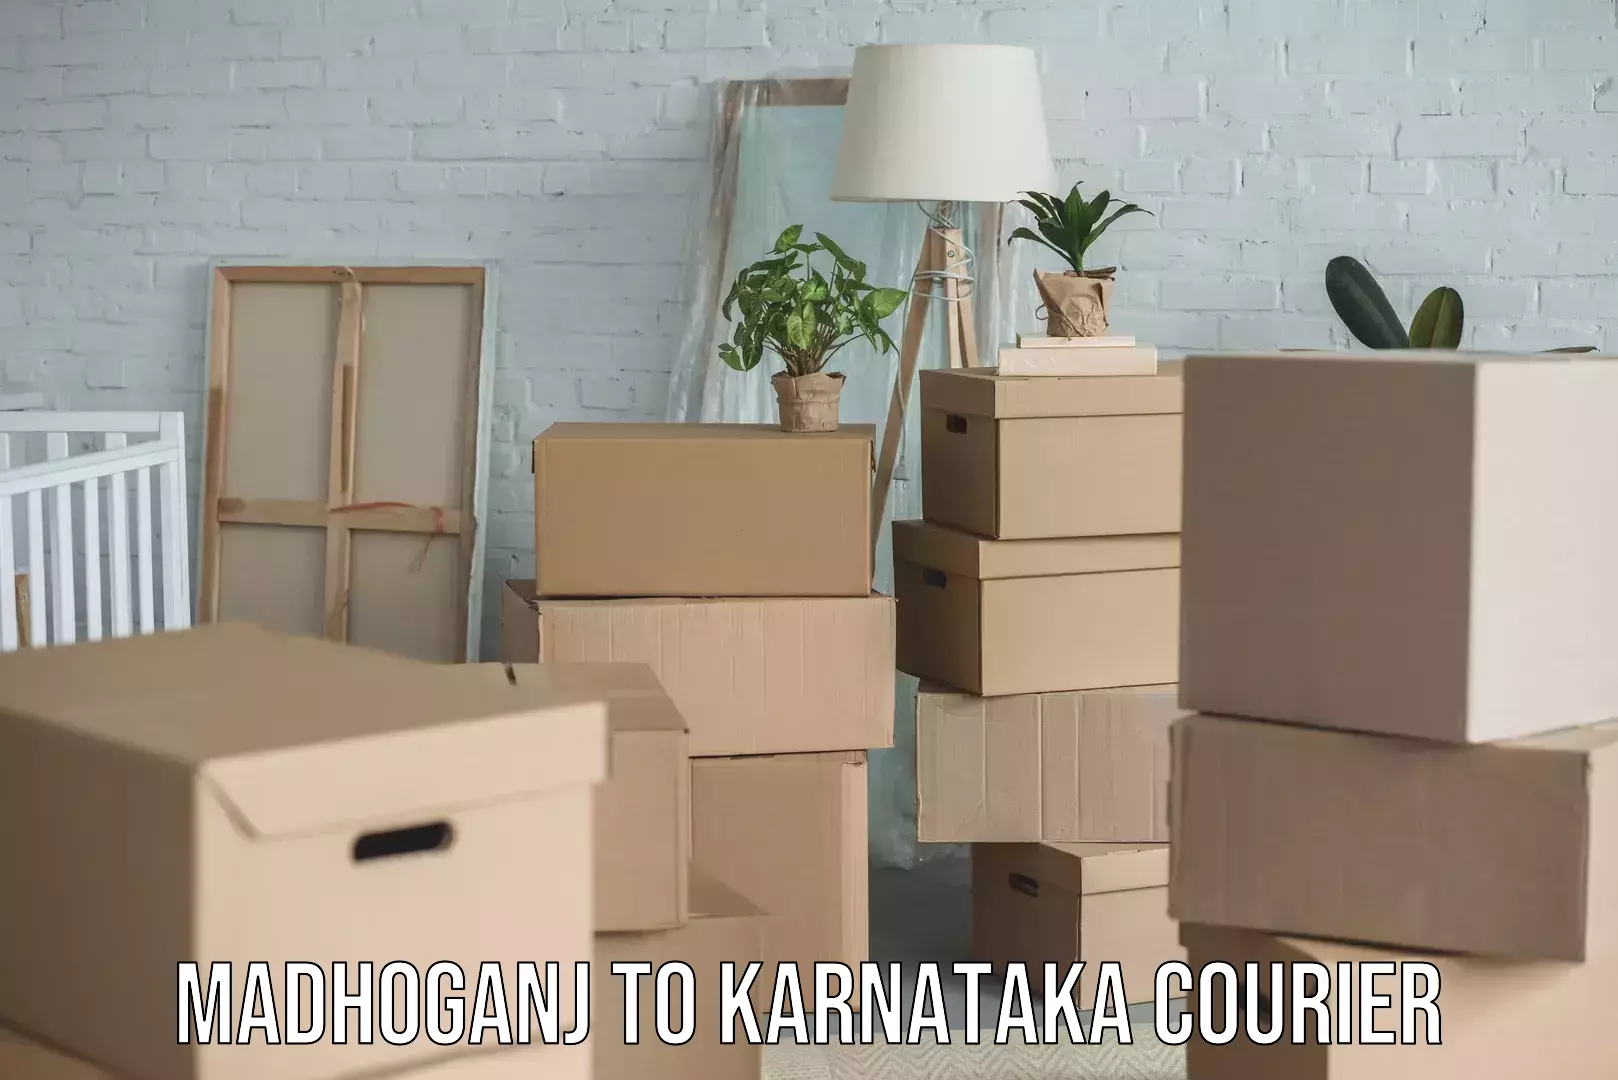 Furniture moving experts Madhoganj to Karnataka